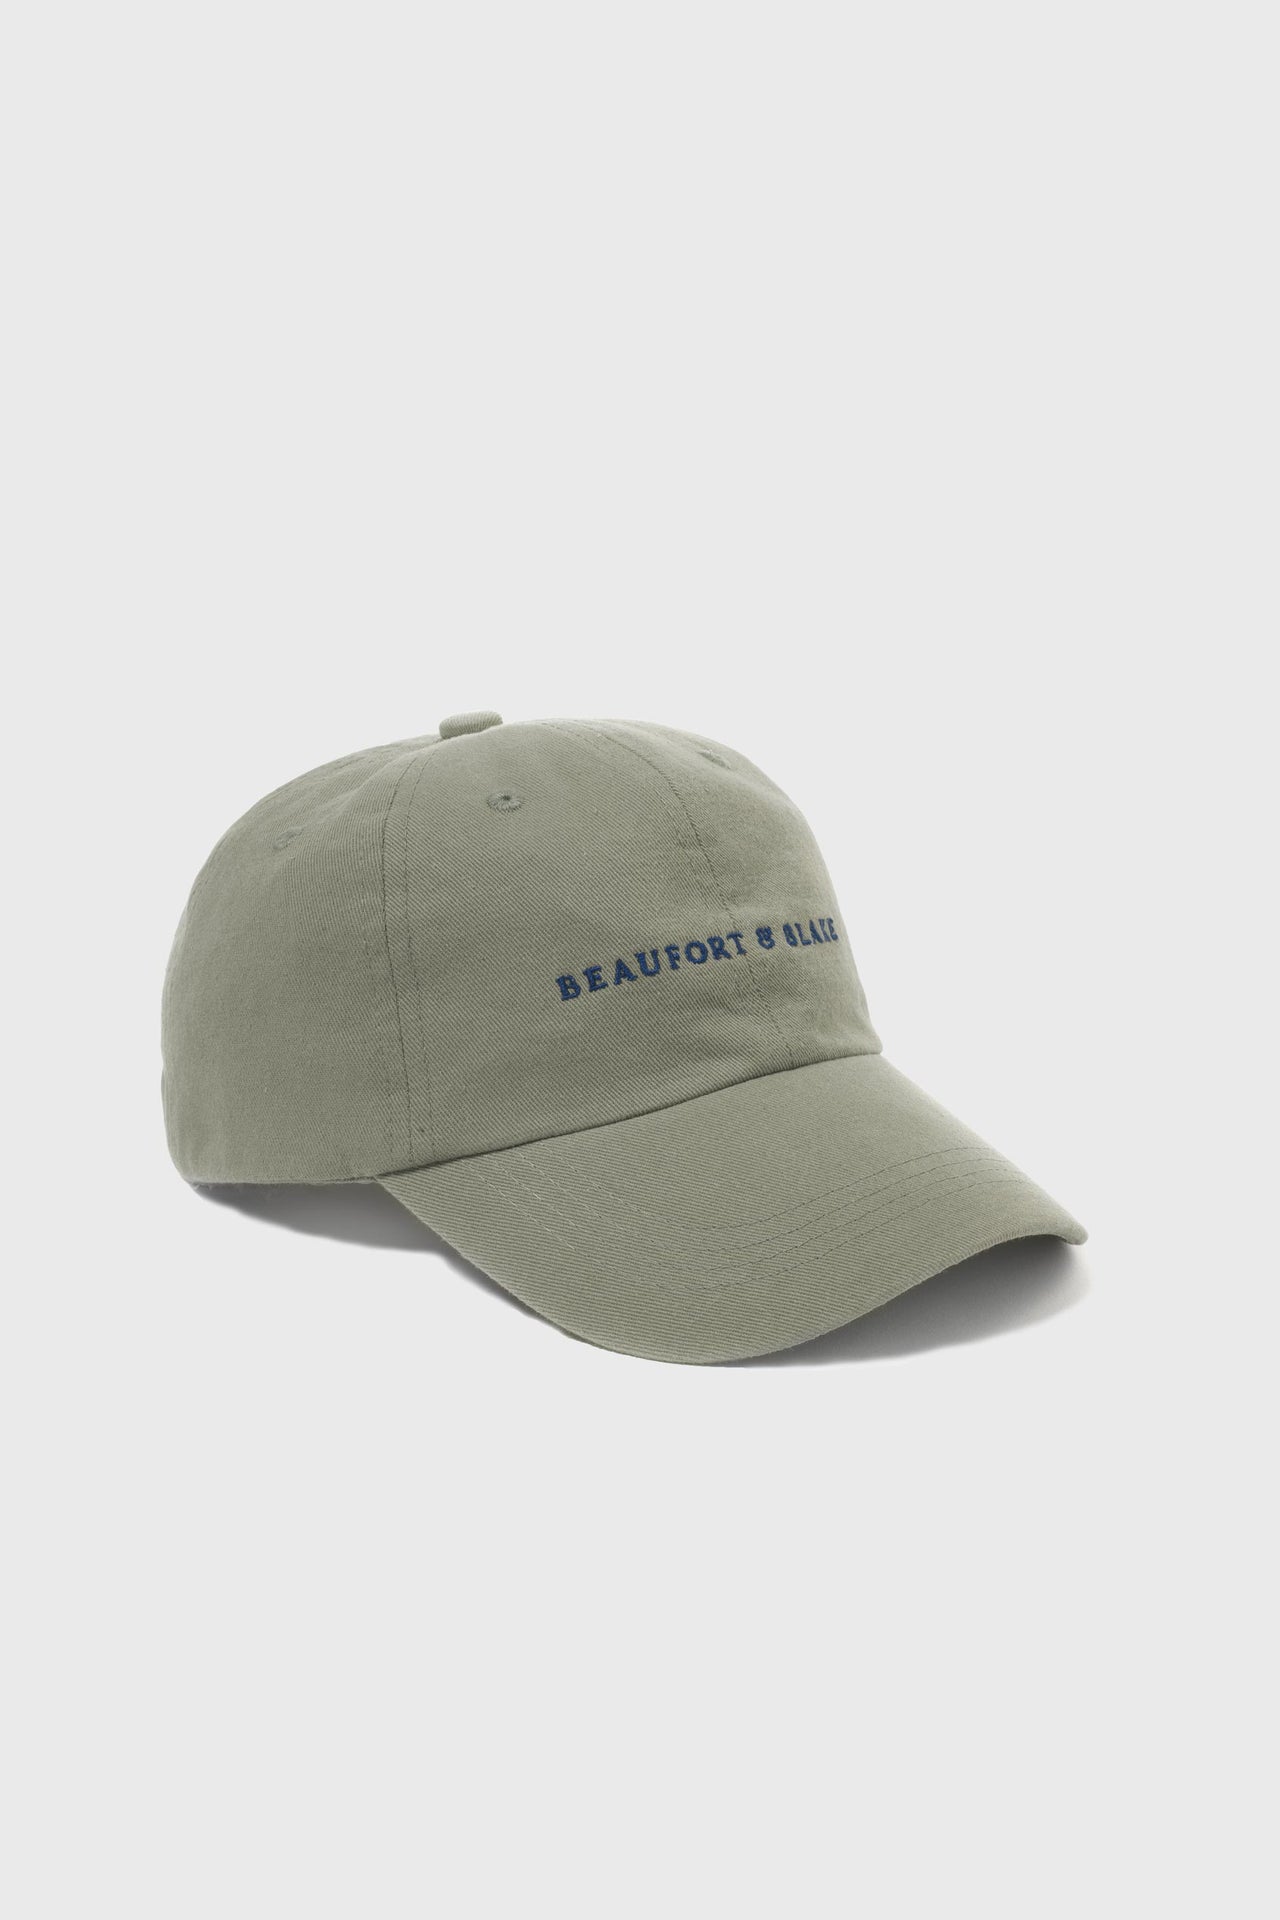 Beaufort Khaki Cap